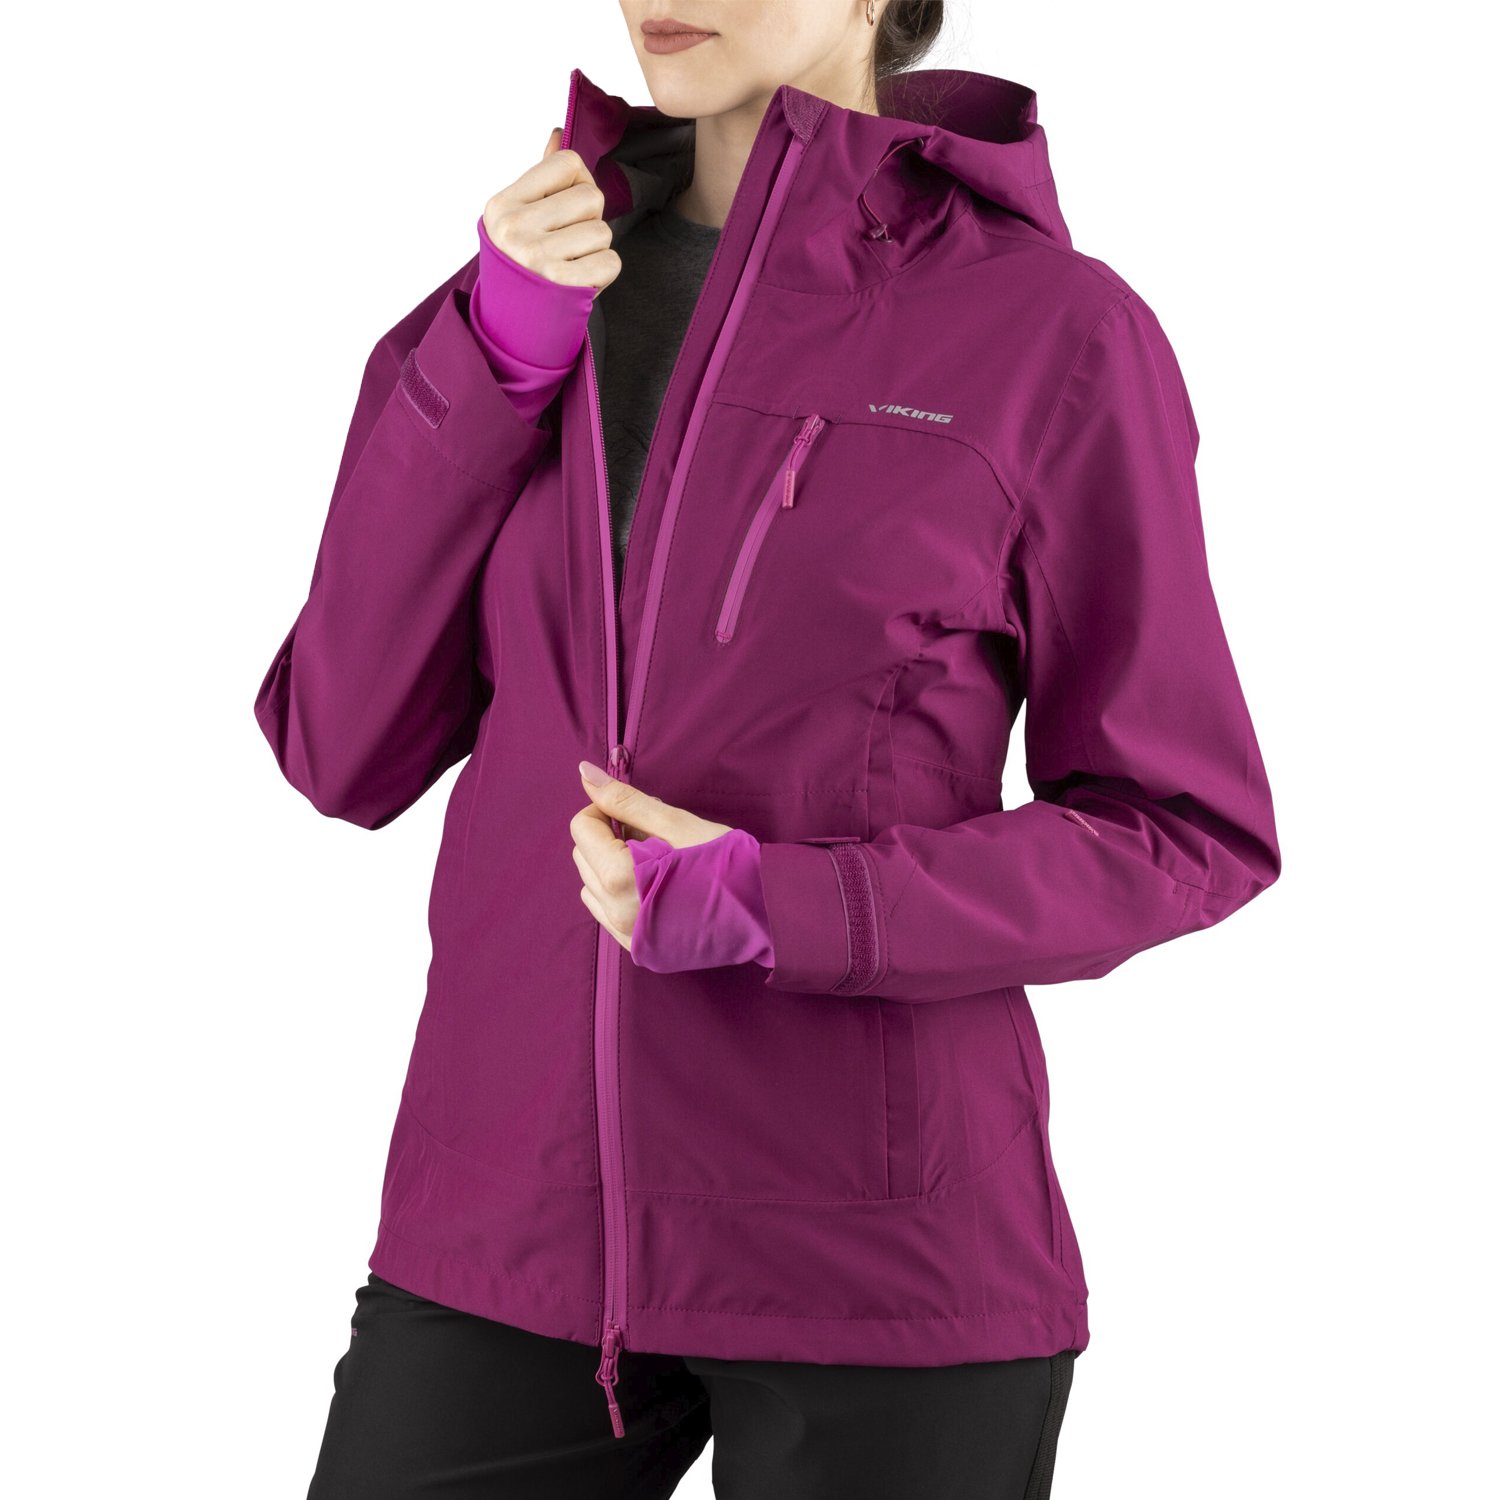 Куртка VIKING Jacket Trek Pro Lady Fuchsia, для активного отдыха, женская, 700/23/0904_4600 феномен активного сознания система объединенных биополей